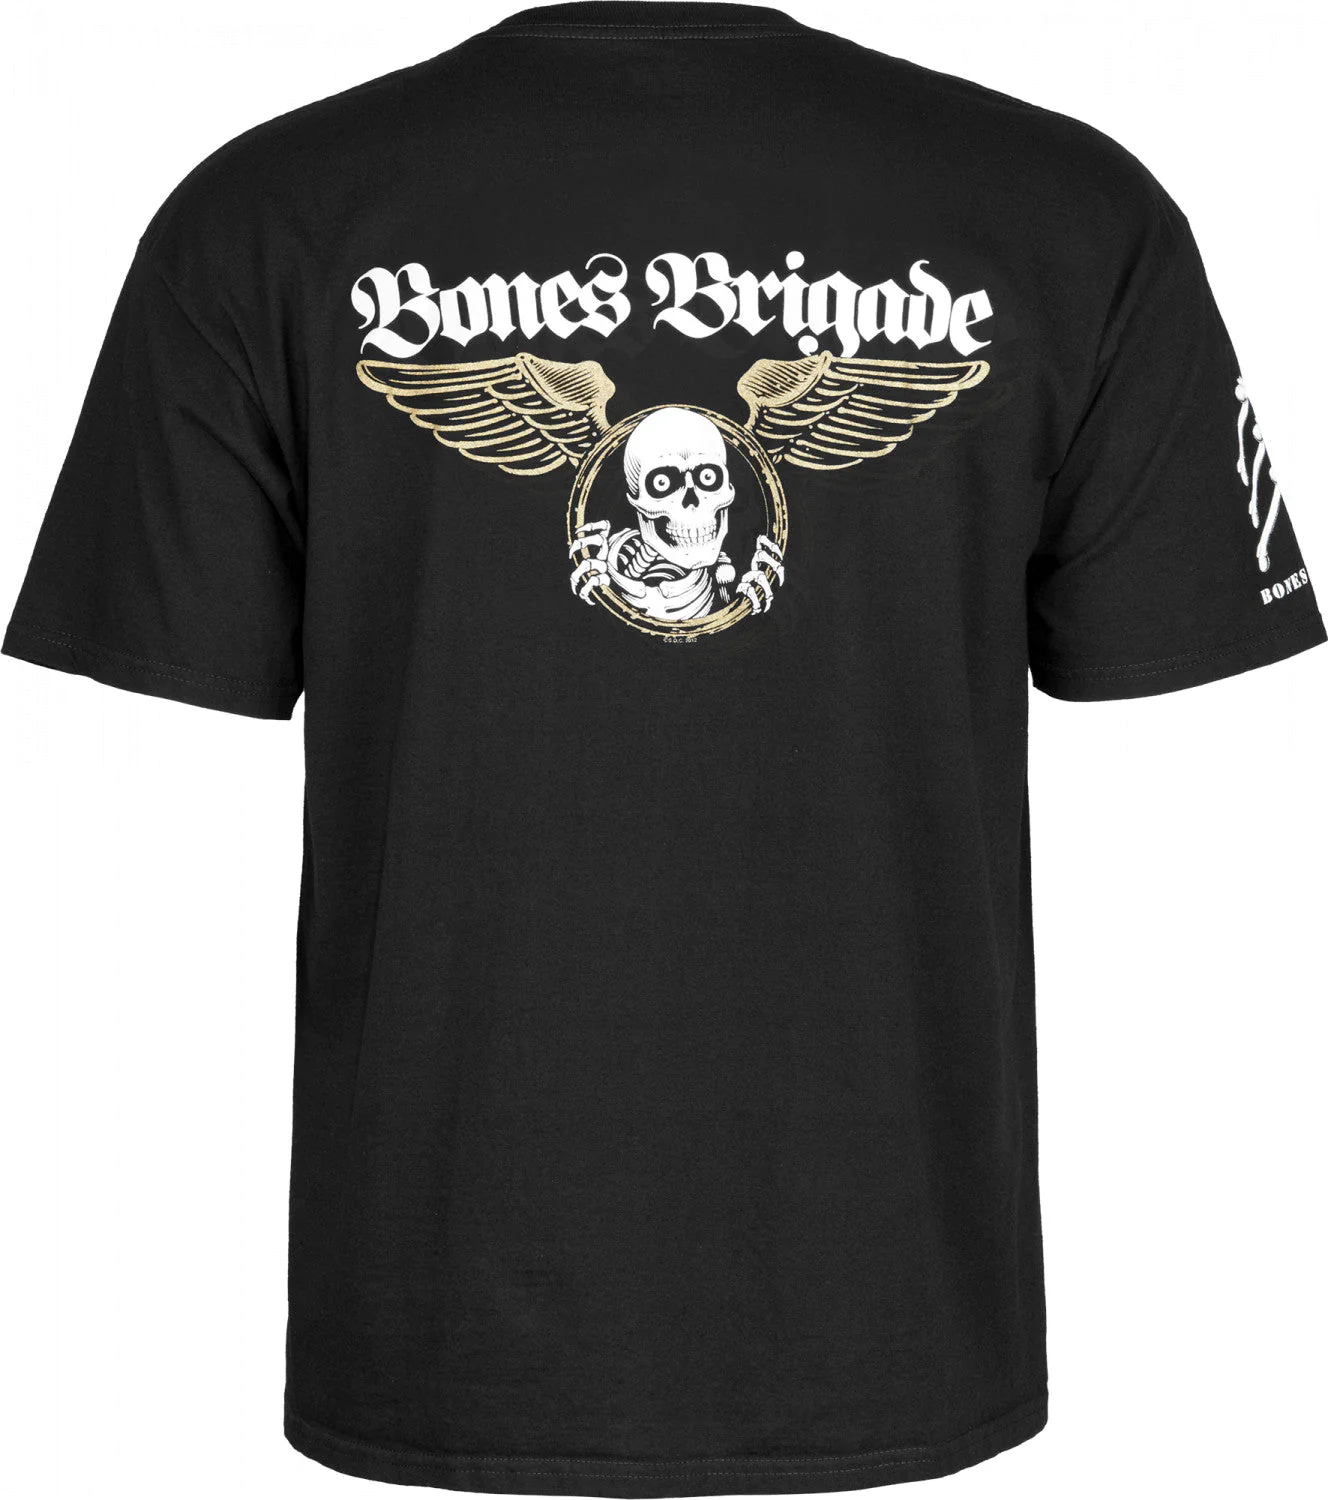 Powell Peralta Bones Brigade Autobiography T Shirt - Black